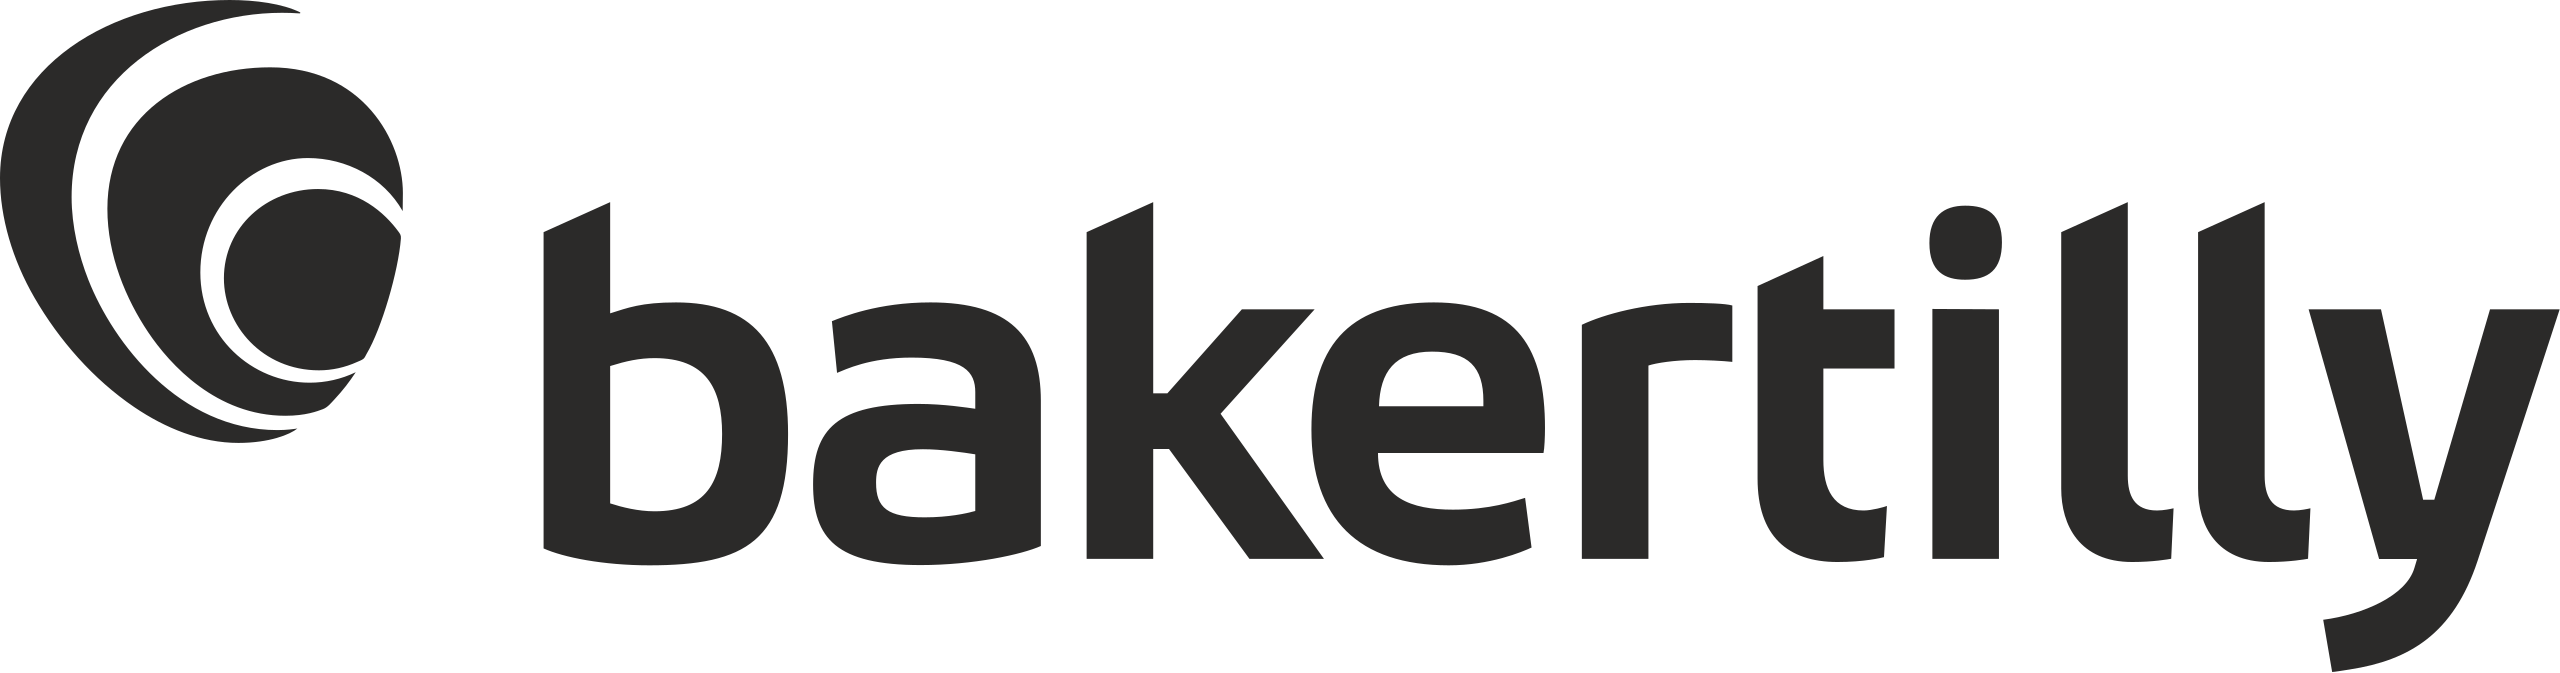 Baker Tilly logo